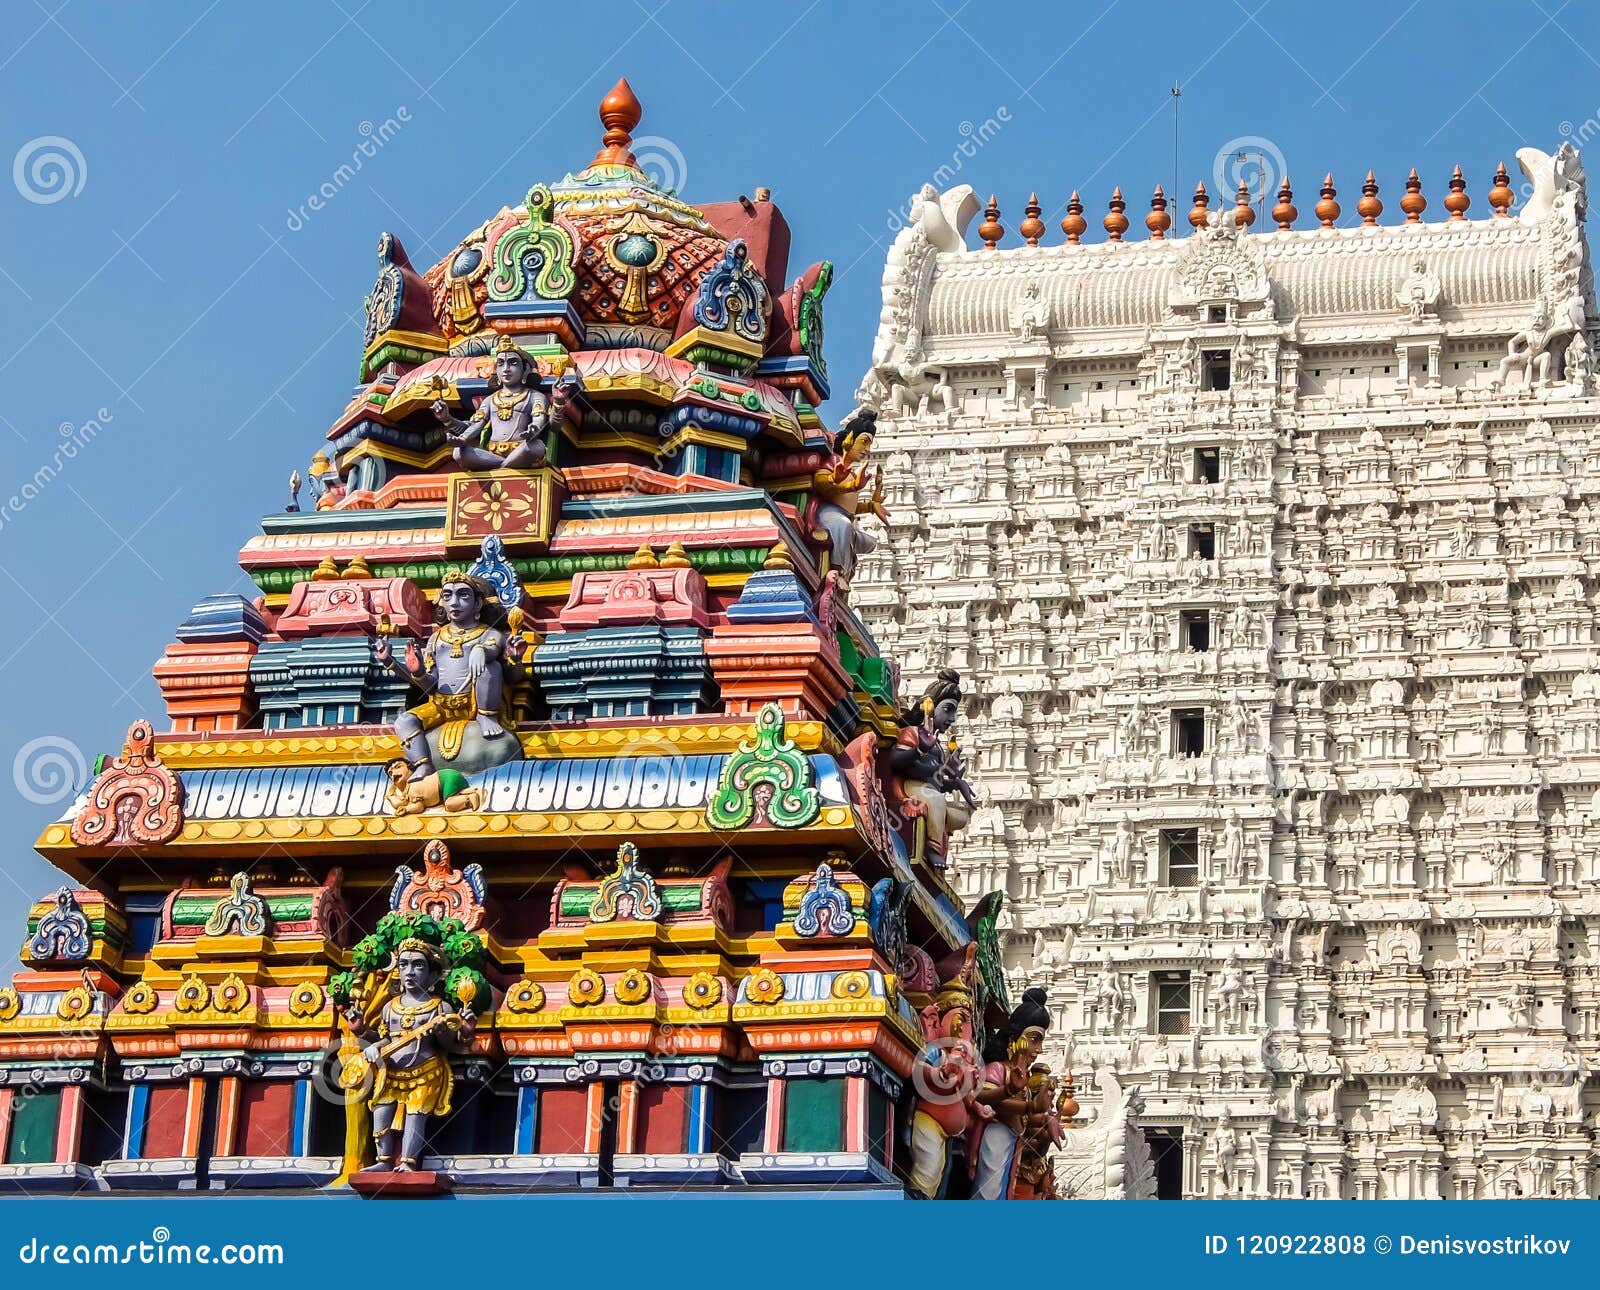 Architecture of Annamalaiyar Temple in Tiruvannamalai, India ...